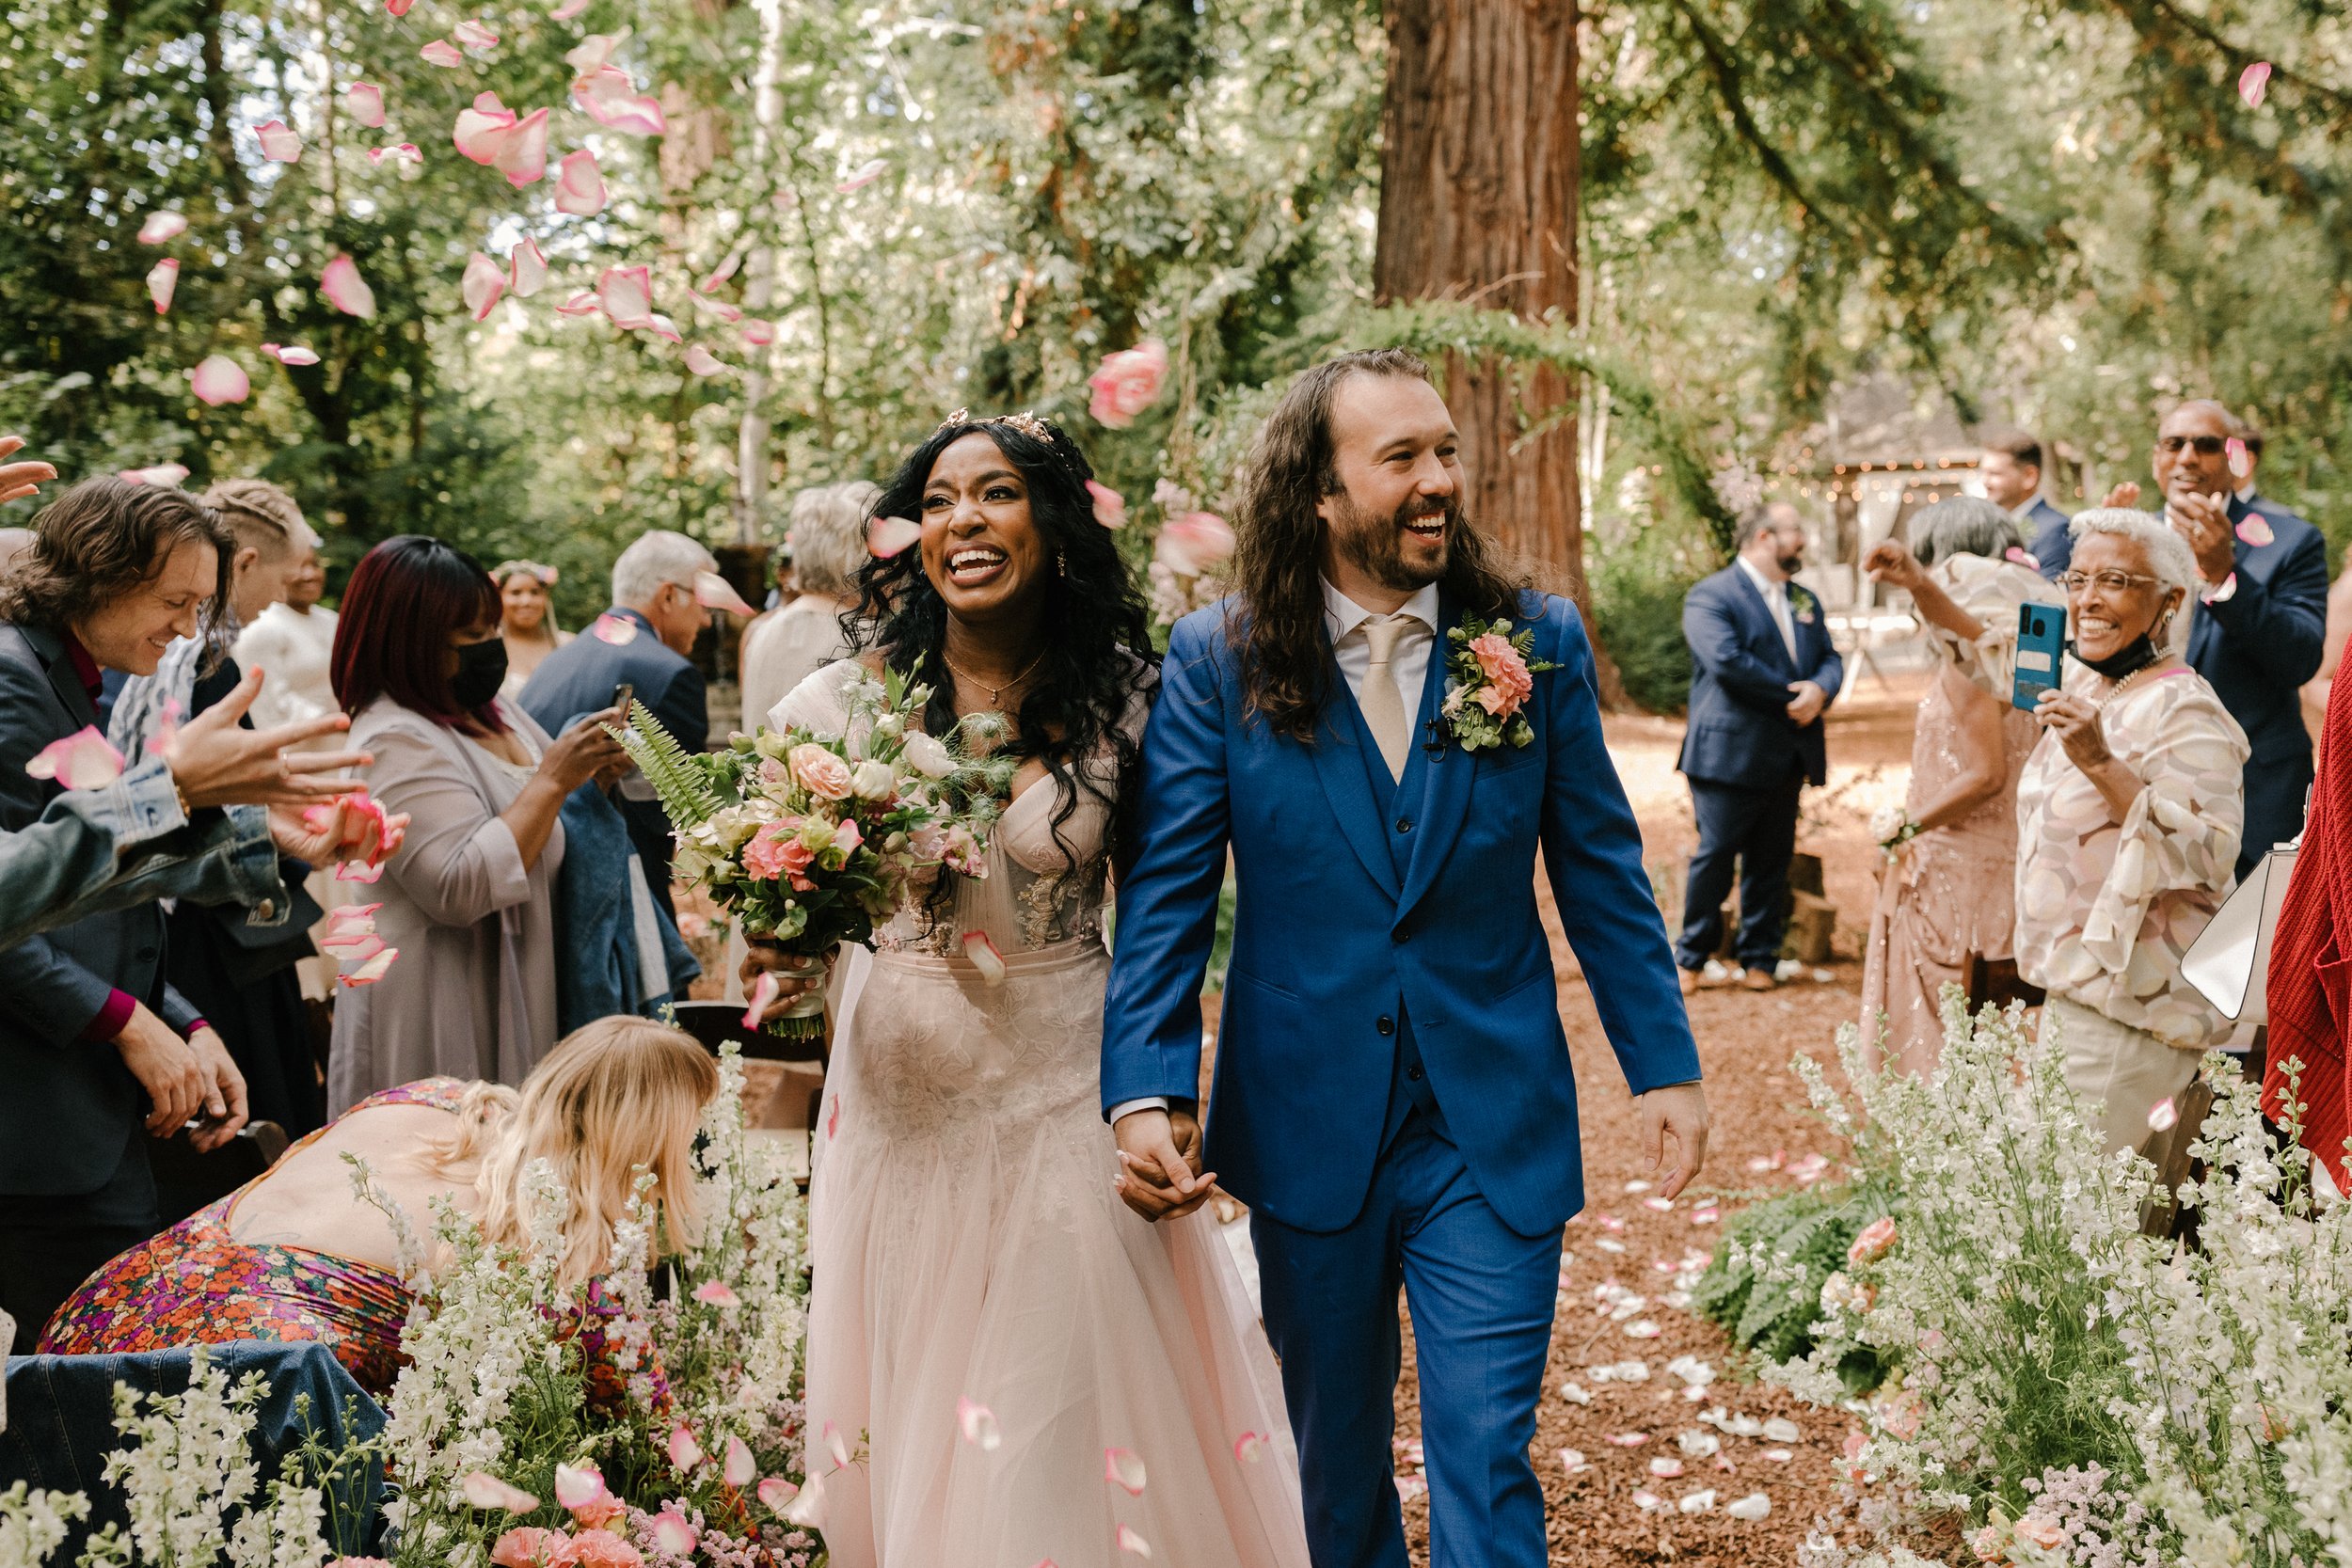 Wes & Arielle's Fairytale Themed Wedding at Sand Rock Farm | Santa Cruz, CA